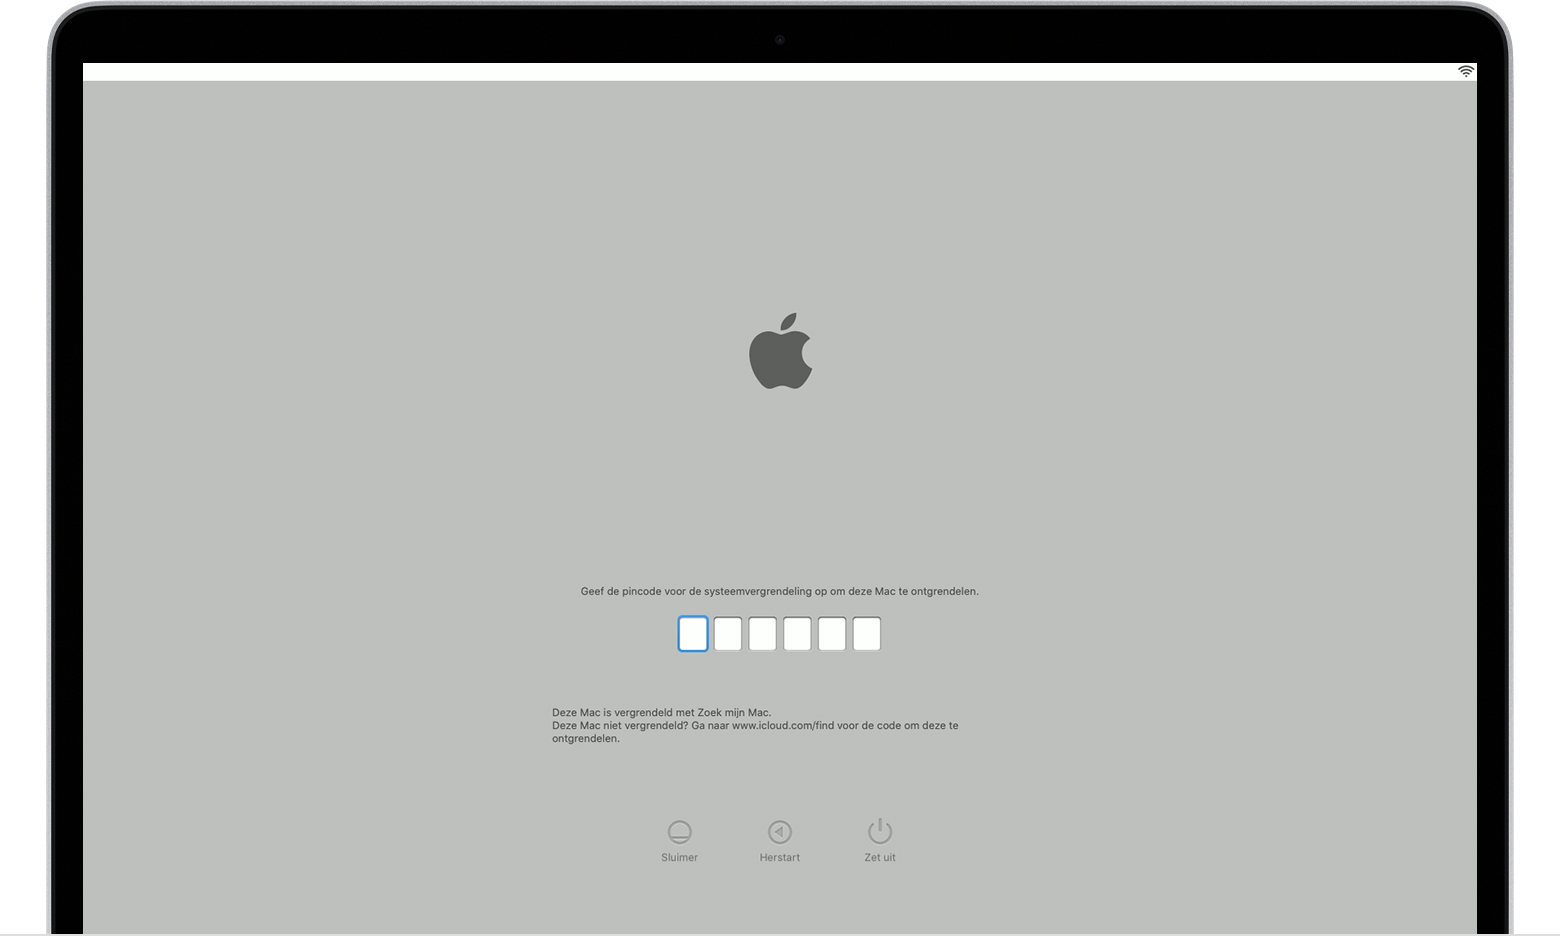 macOS-opstartscherm met pincode voor ontgrendeling van het systeem